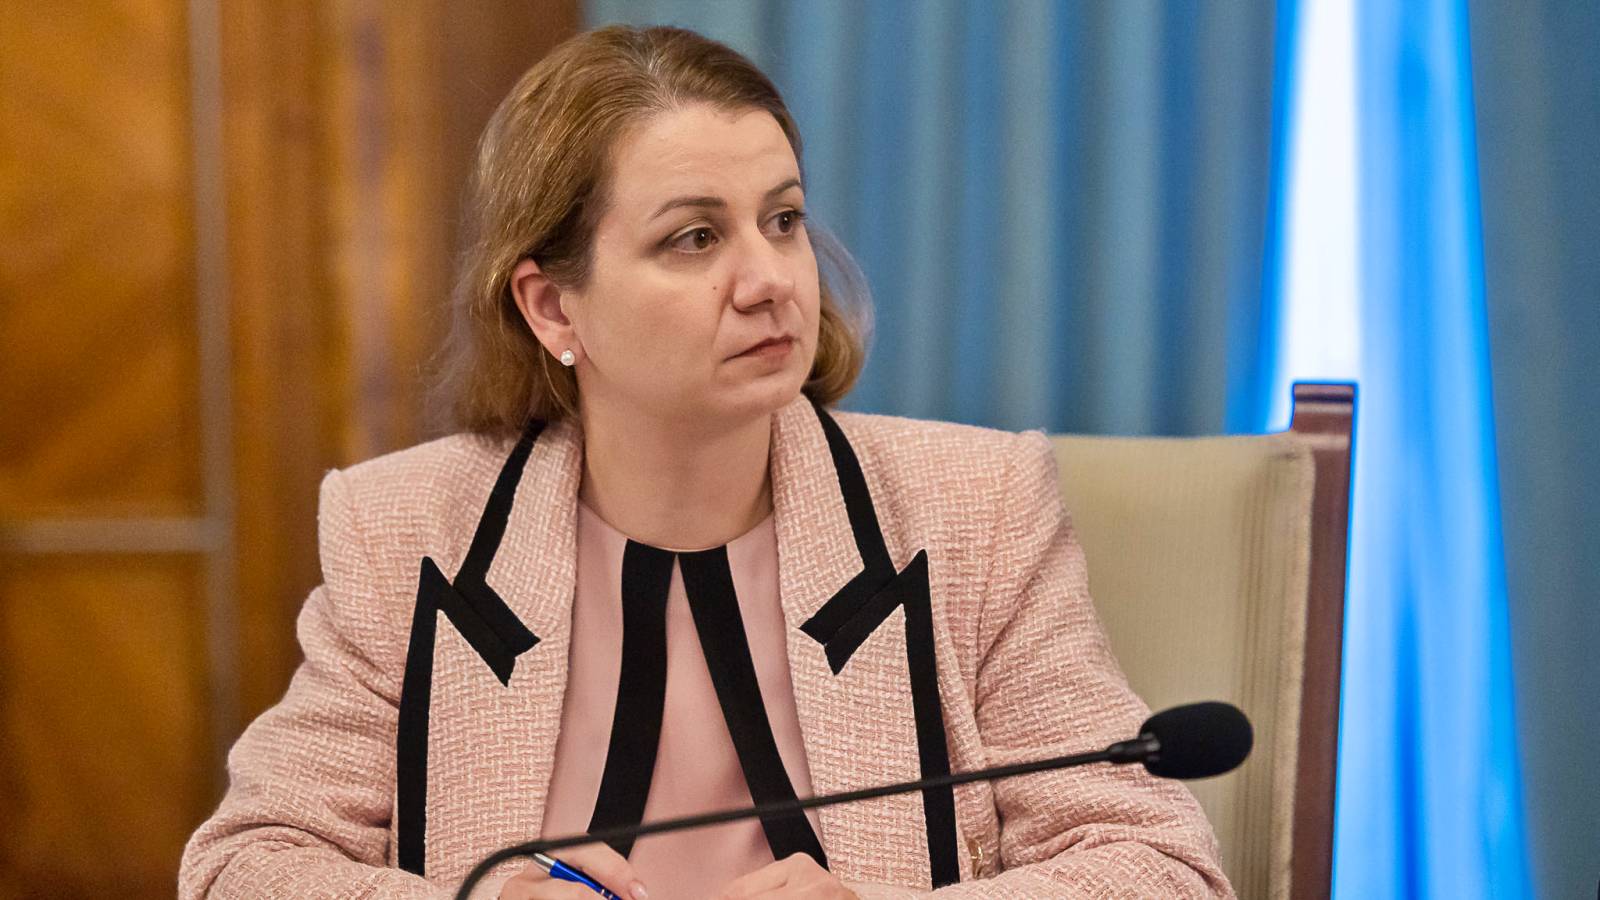 El Ministro de Educación aprueba oficialmente importantes cambios en las escuelas rumanas